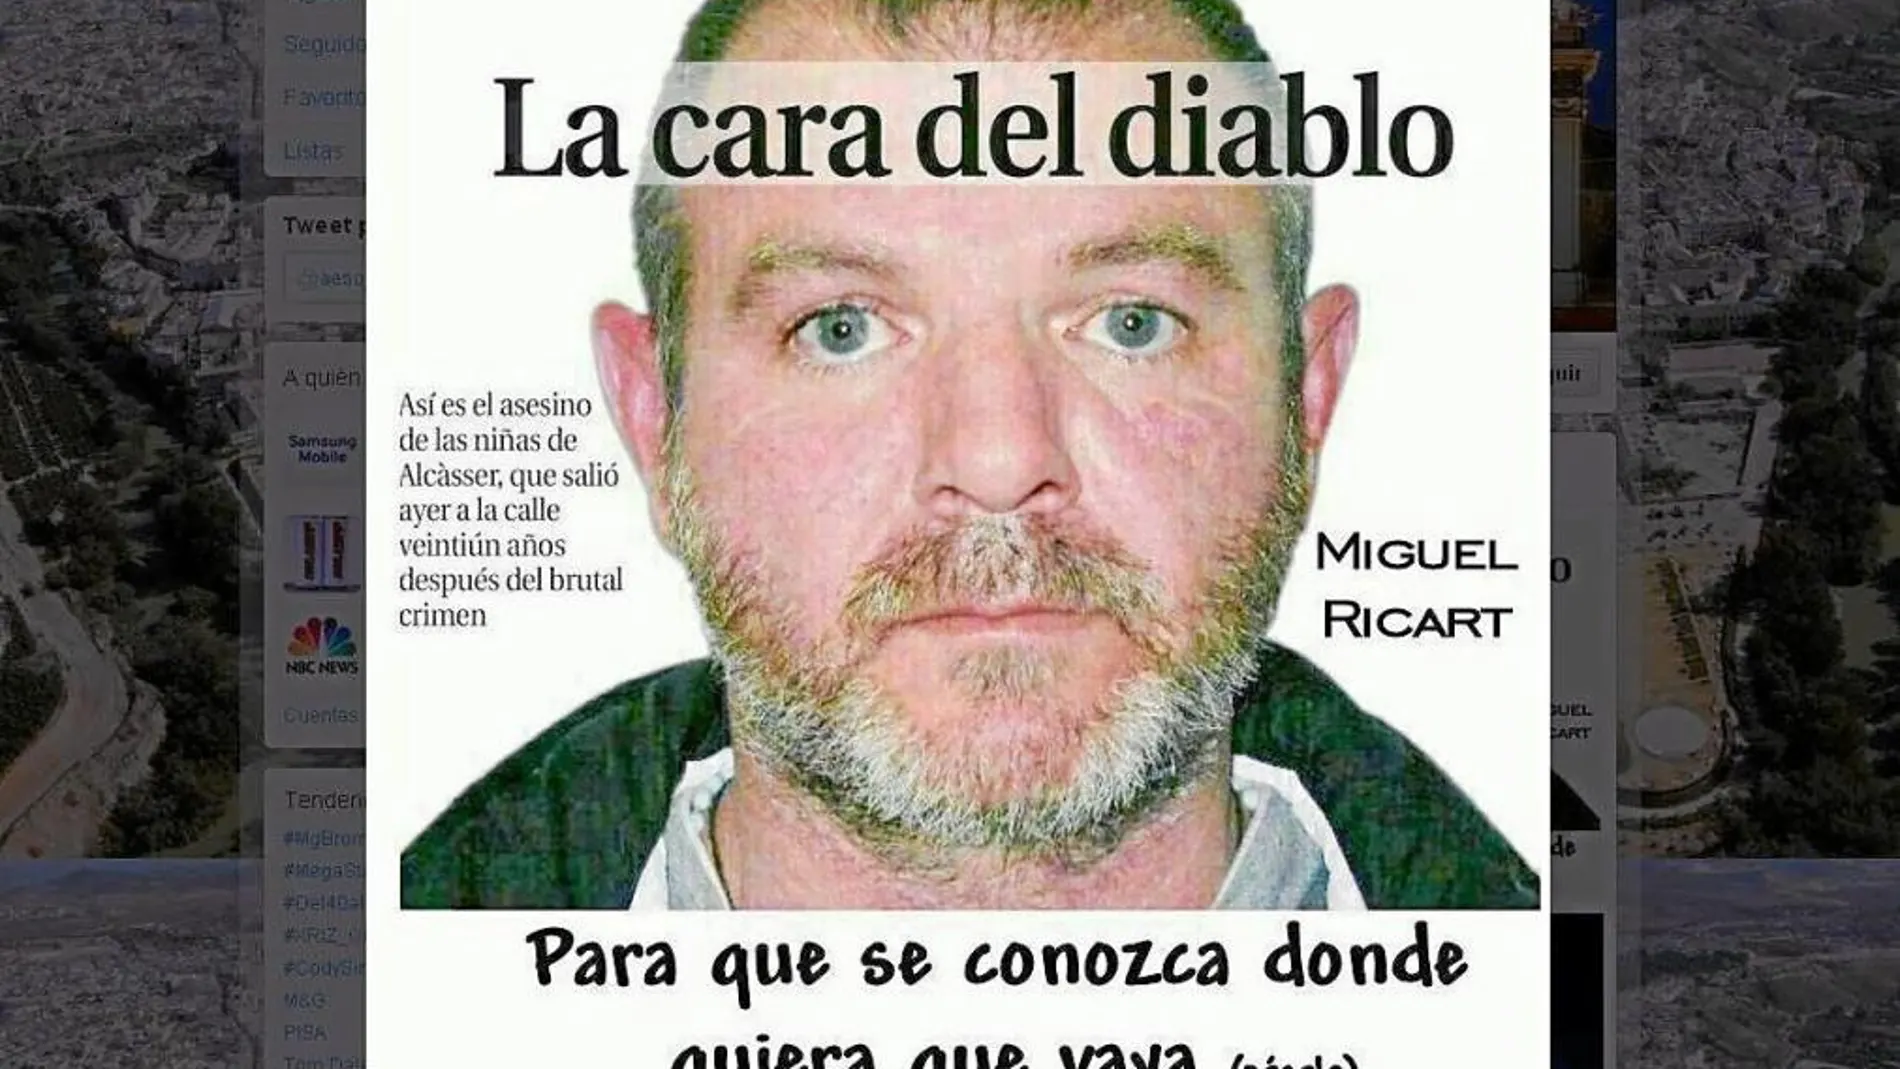 El Gobierno pide que Miguel Ricart vuelva a prisión